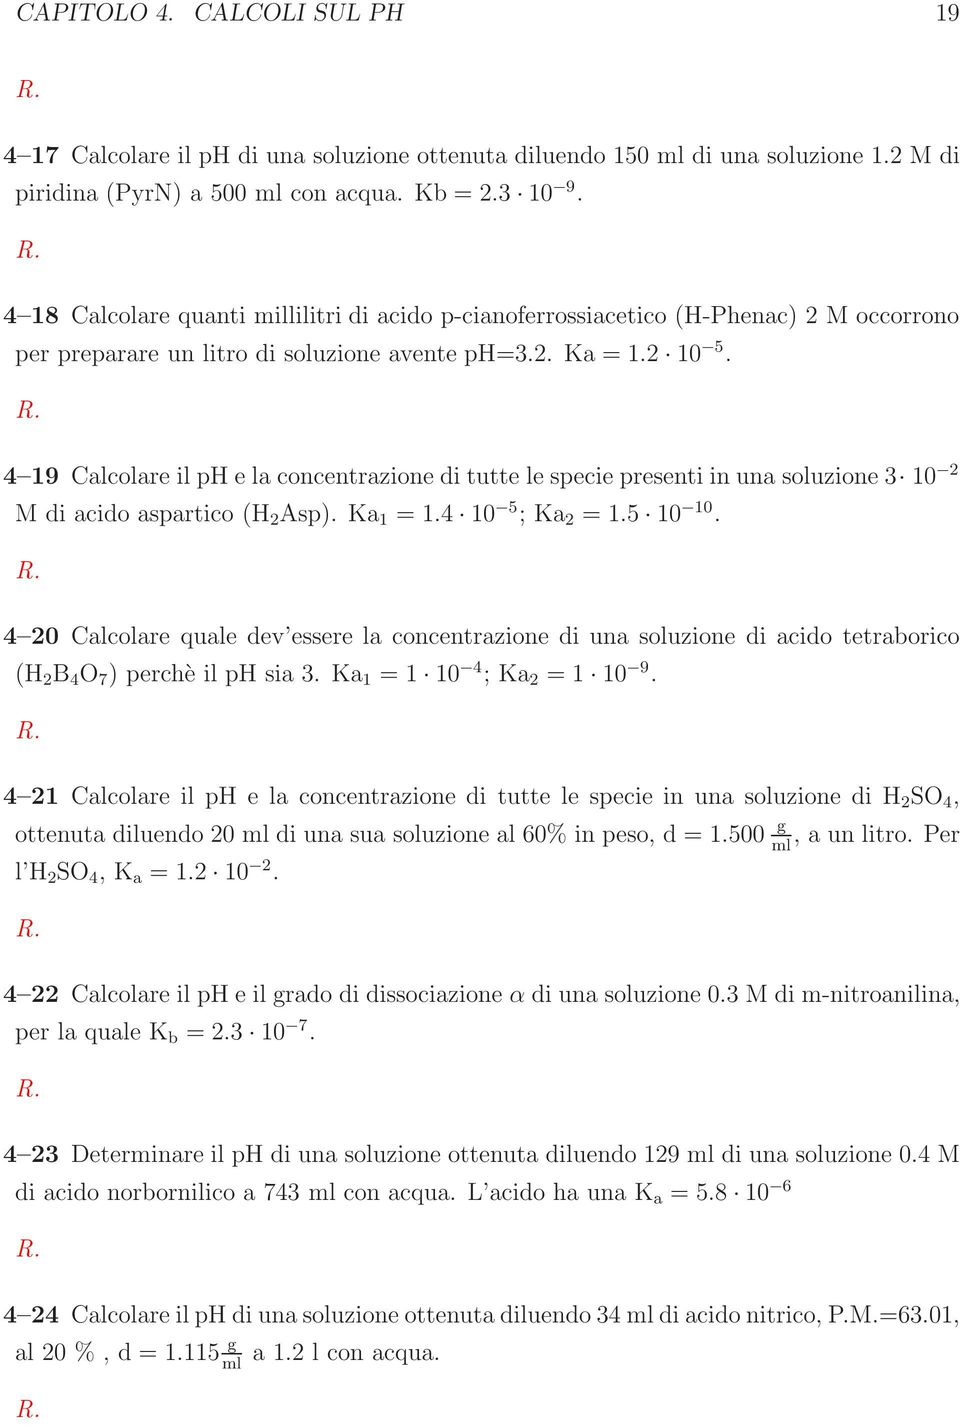 4 19 Calcolare il ph e la concentrazione di tutte le specie presenti in una soluzione 3 10 2 M di acido aspartico (H 2 Asp). Ka 1 =1.4 10 5 ;Ka 2 =1.5 10 10.